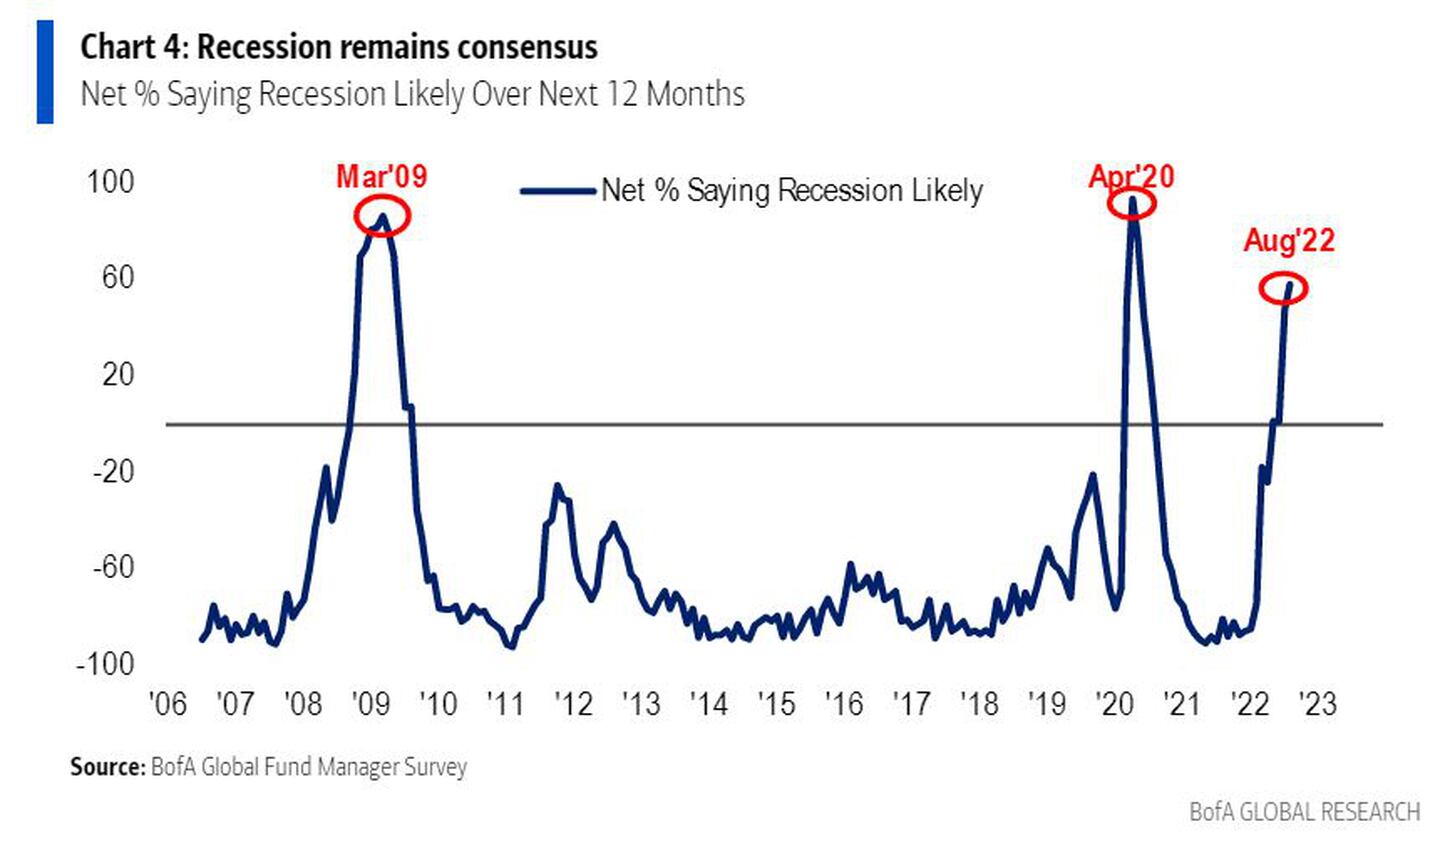 Porcentaje neto que dice que una recesión en los próximos 12 meses es probabledfd